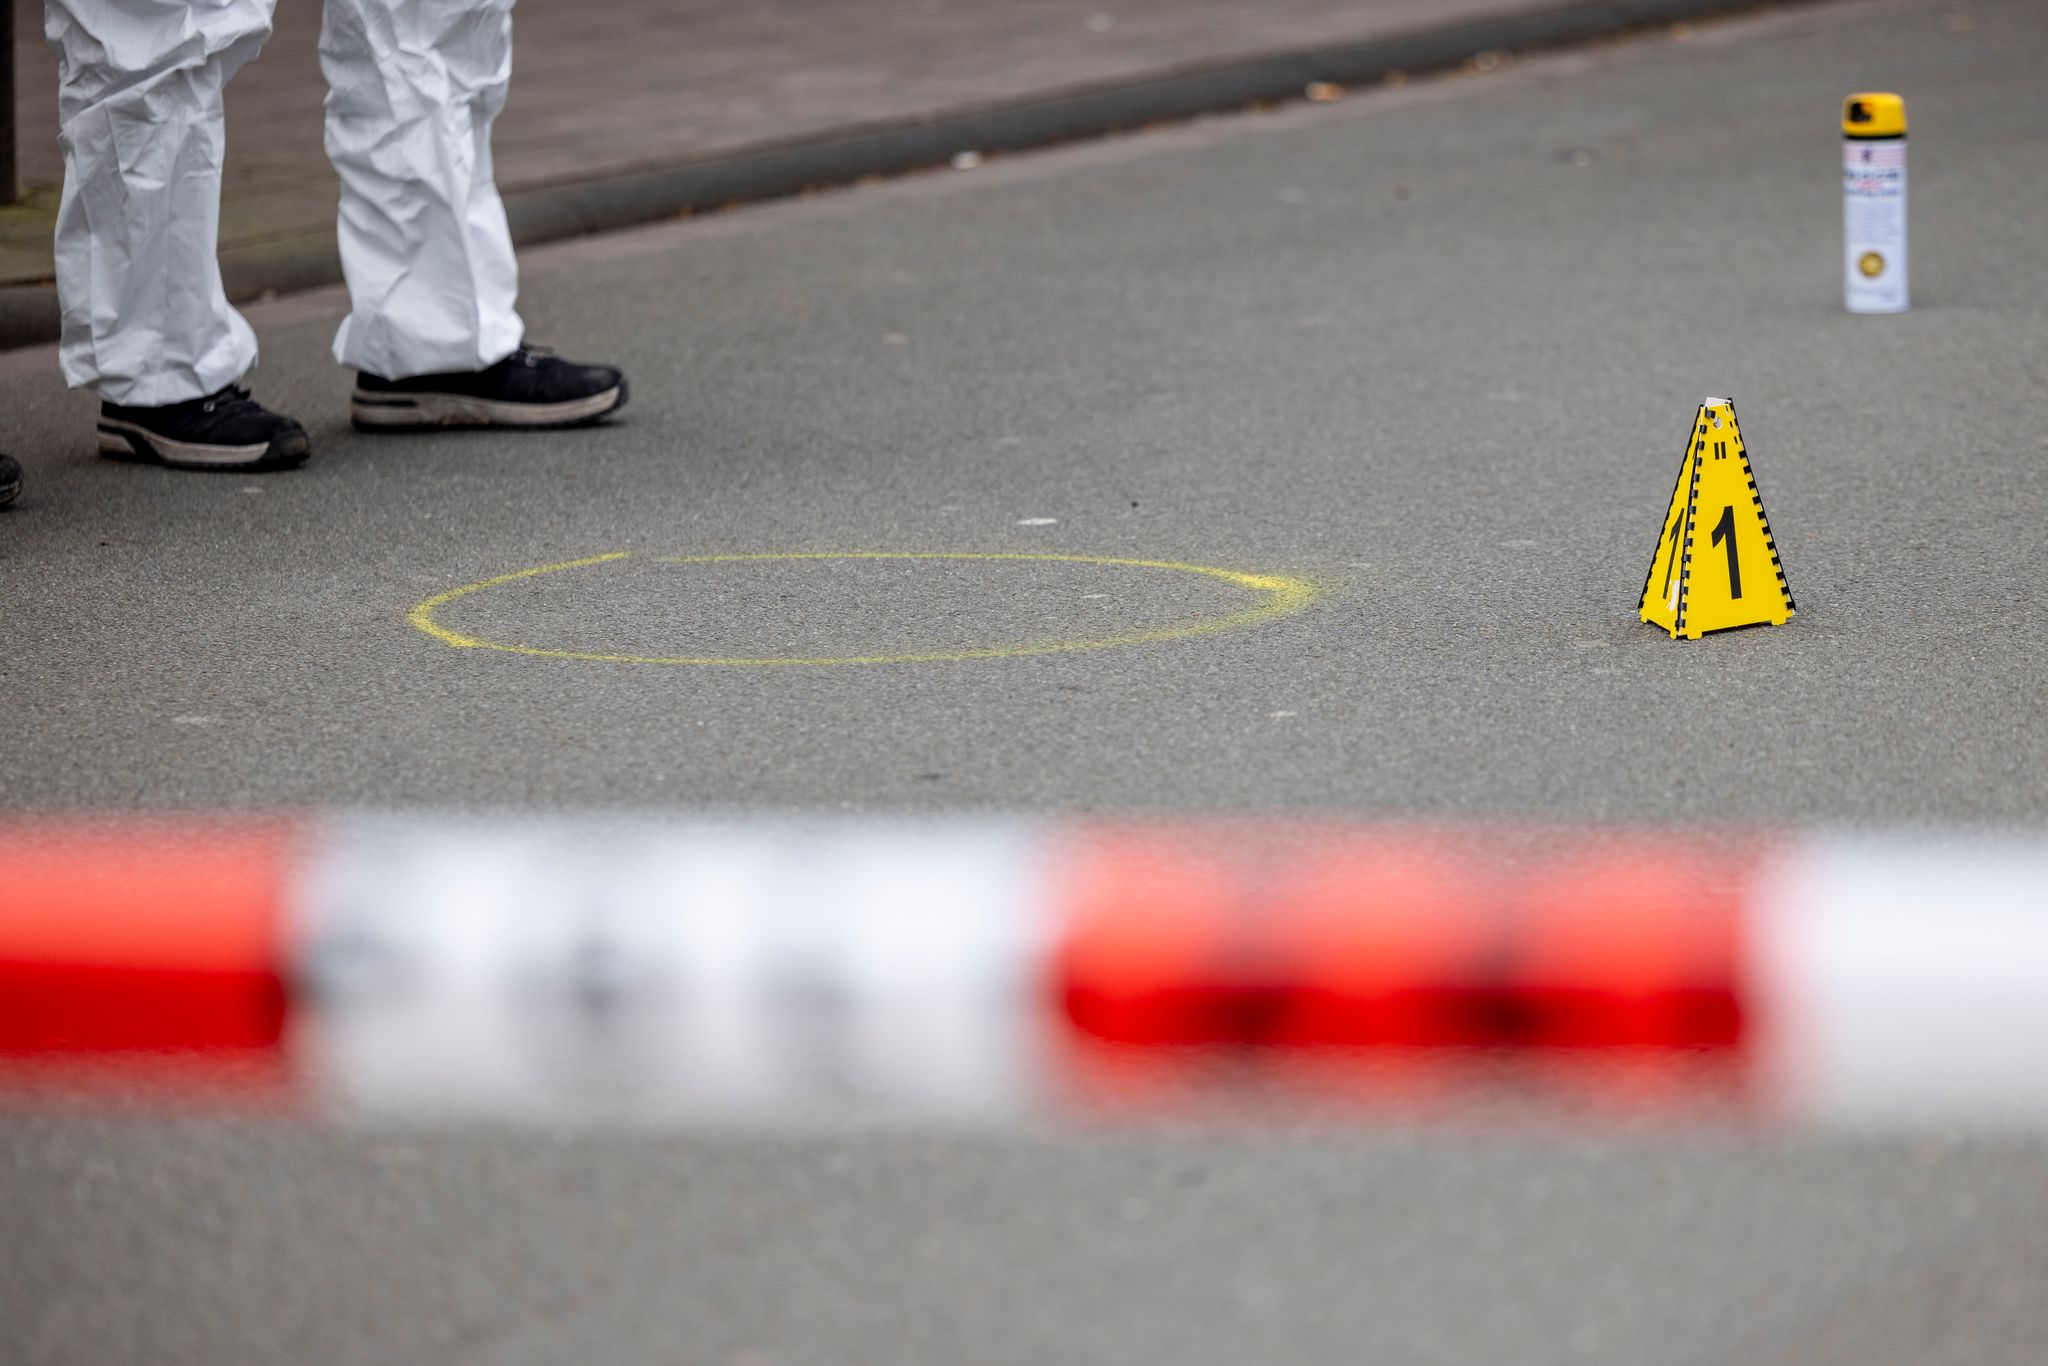 Messerangreifer von Duisburg soll Mord angekündigt haben